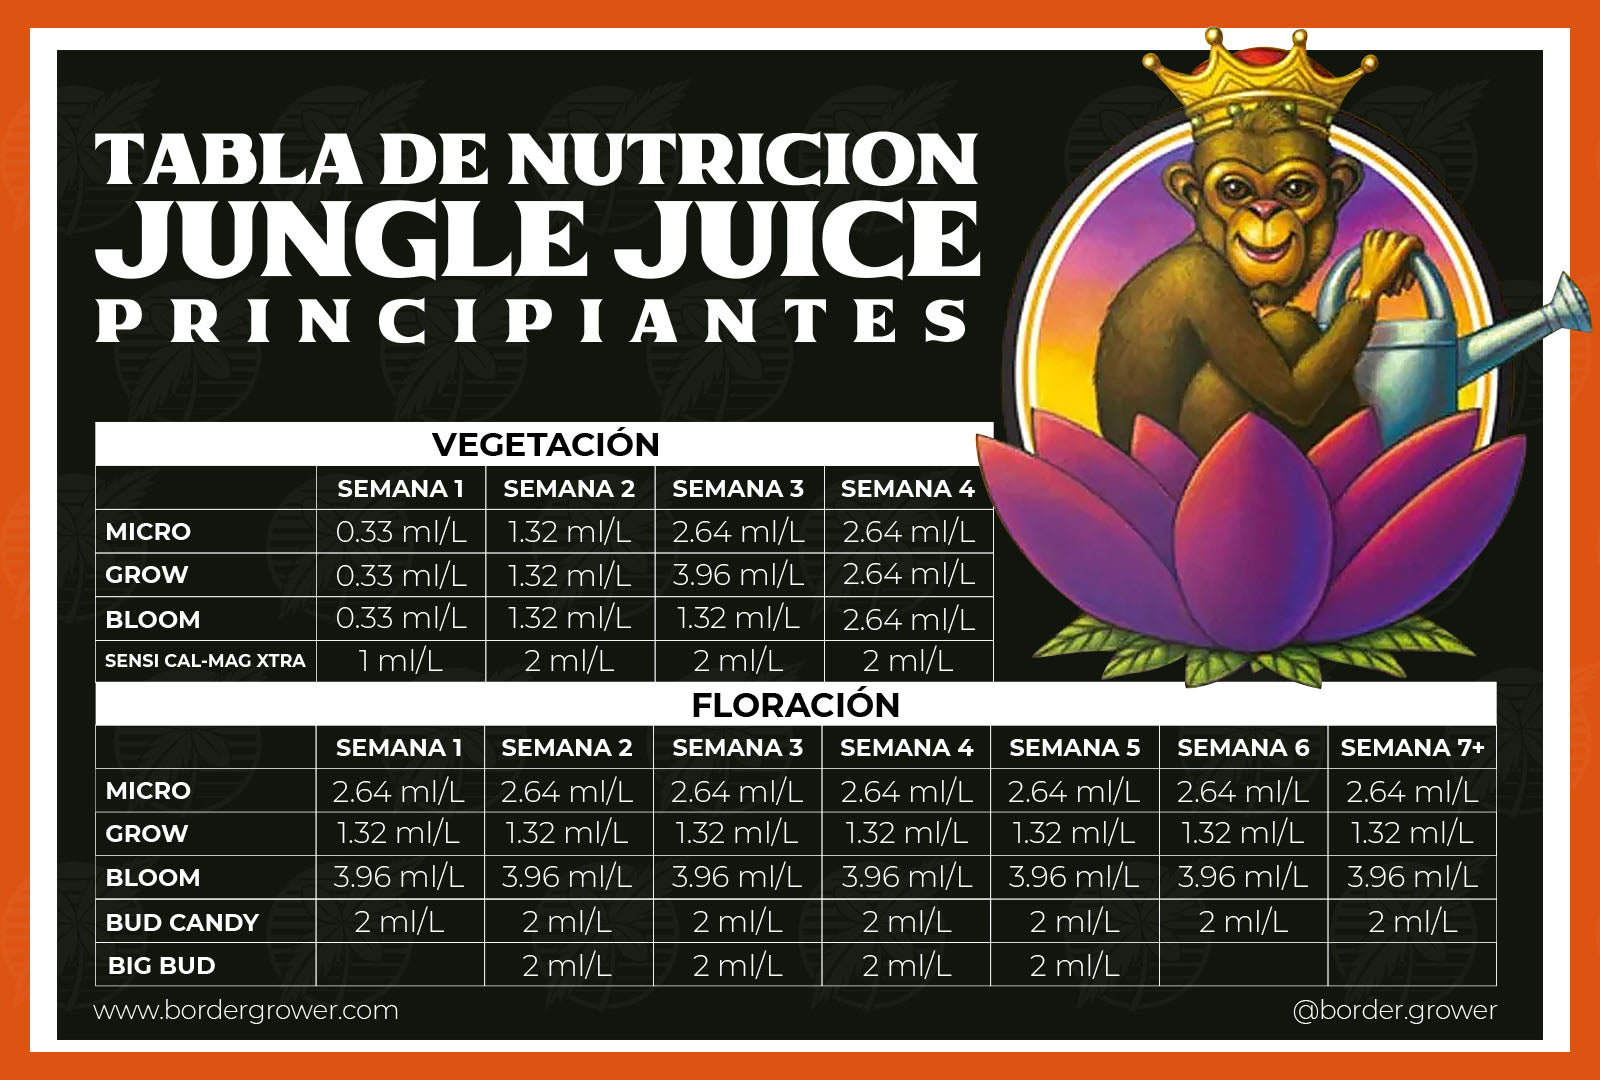 Tabla de nutricion oficial de advanced nutrients en español jungle juice trio micro grow y bloom como usar en calendario de cultivo de advqanced nutrients mexico